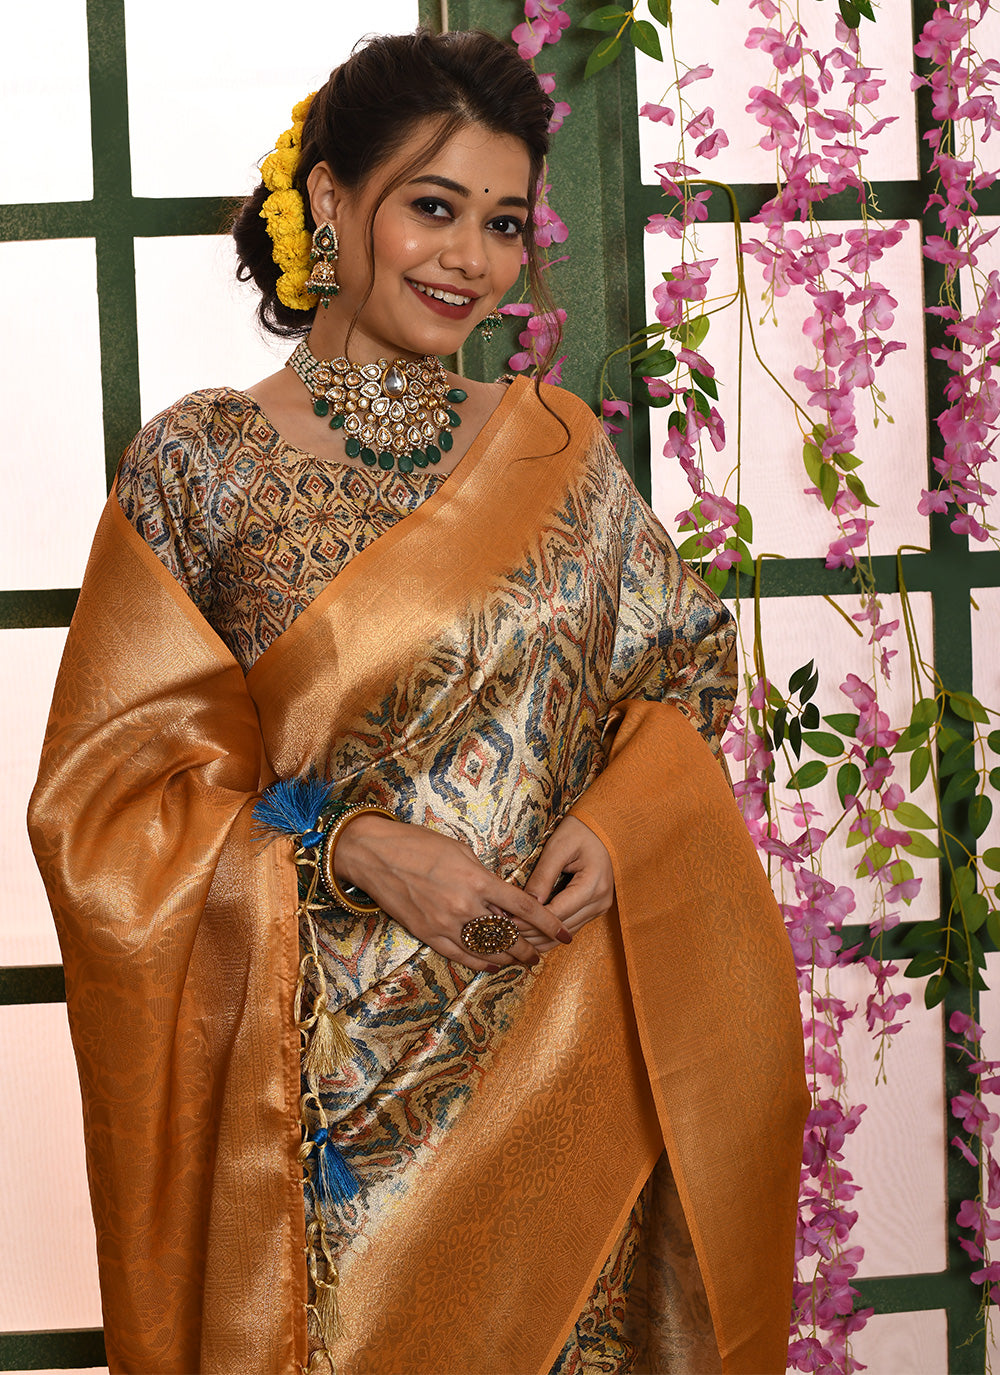 Banarasi Silk Trendy Saree